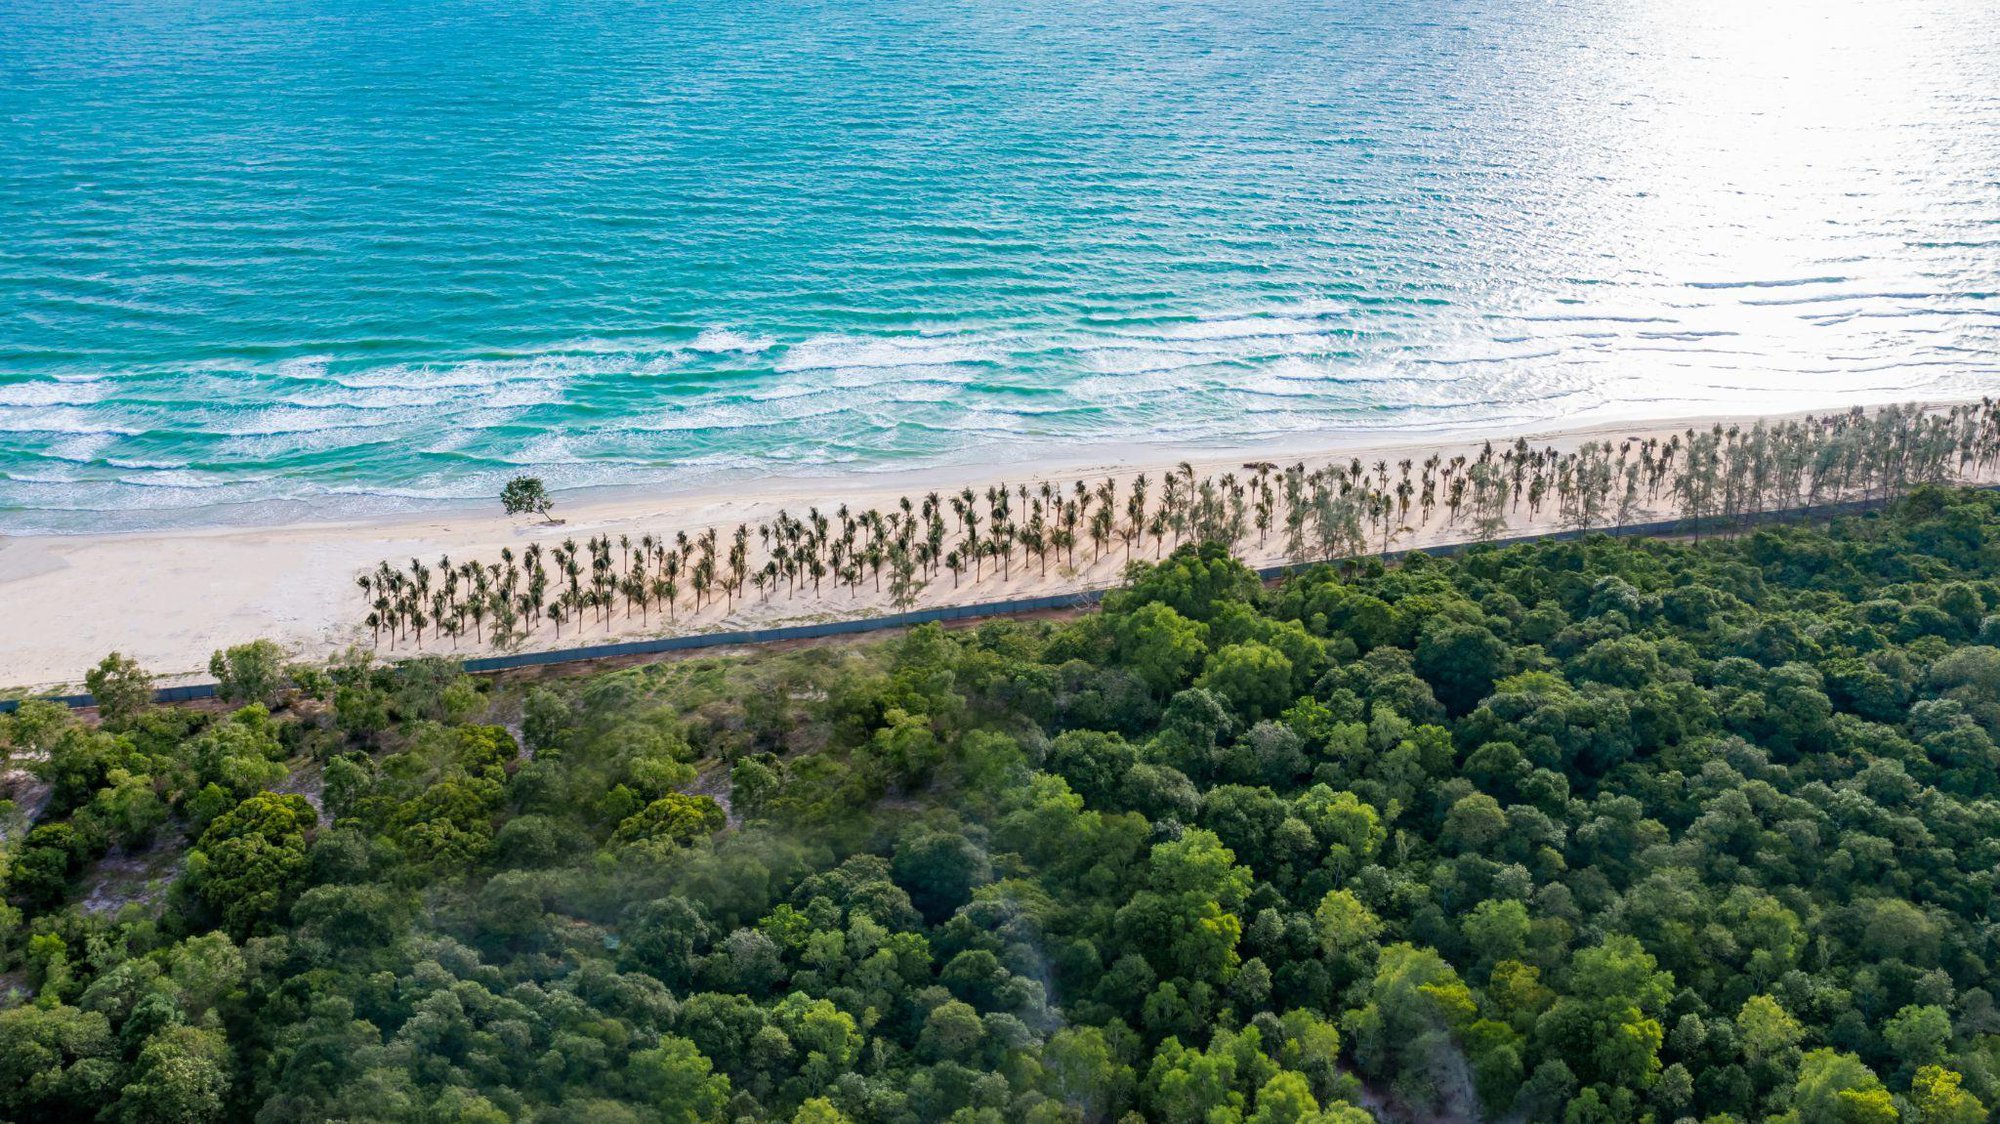 Mục sở thị 3 bãi biển đẹp bậc nhất hành tinh tại Phú Quốc - Ảnh 6.